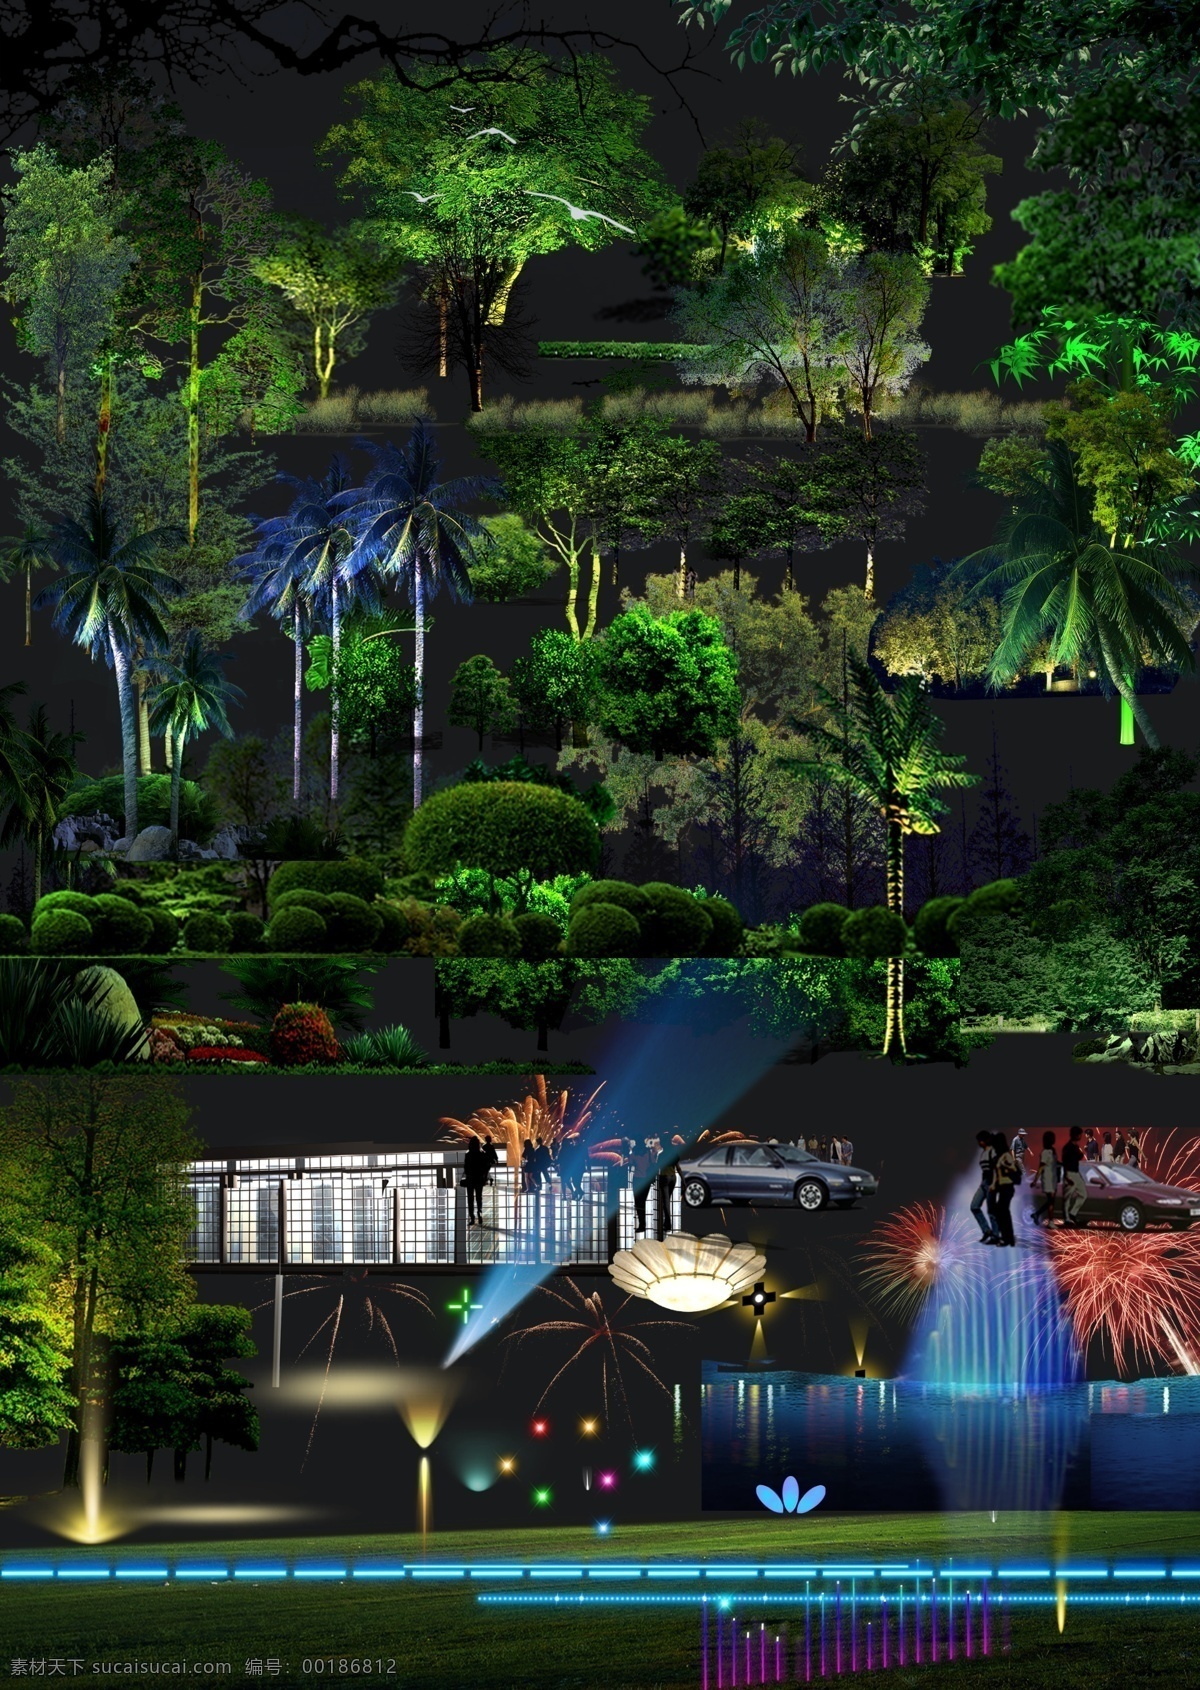 分层 灯光 景观素材 绿化 汽车 人物 树木 园林 夜景 模板下载 源文件 装饰素材 园林景观设计